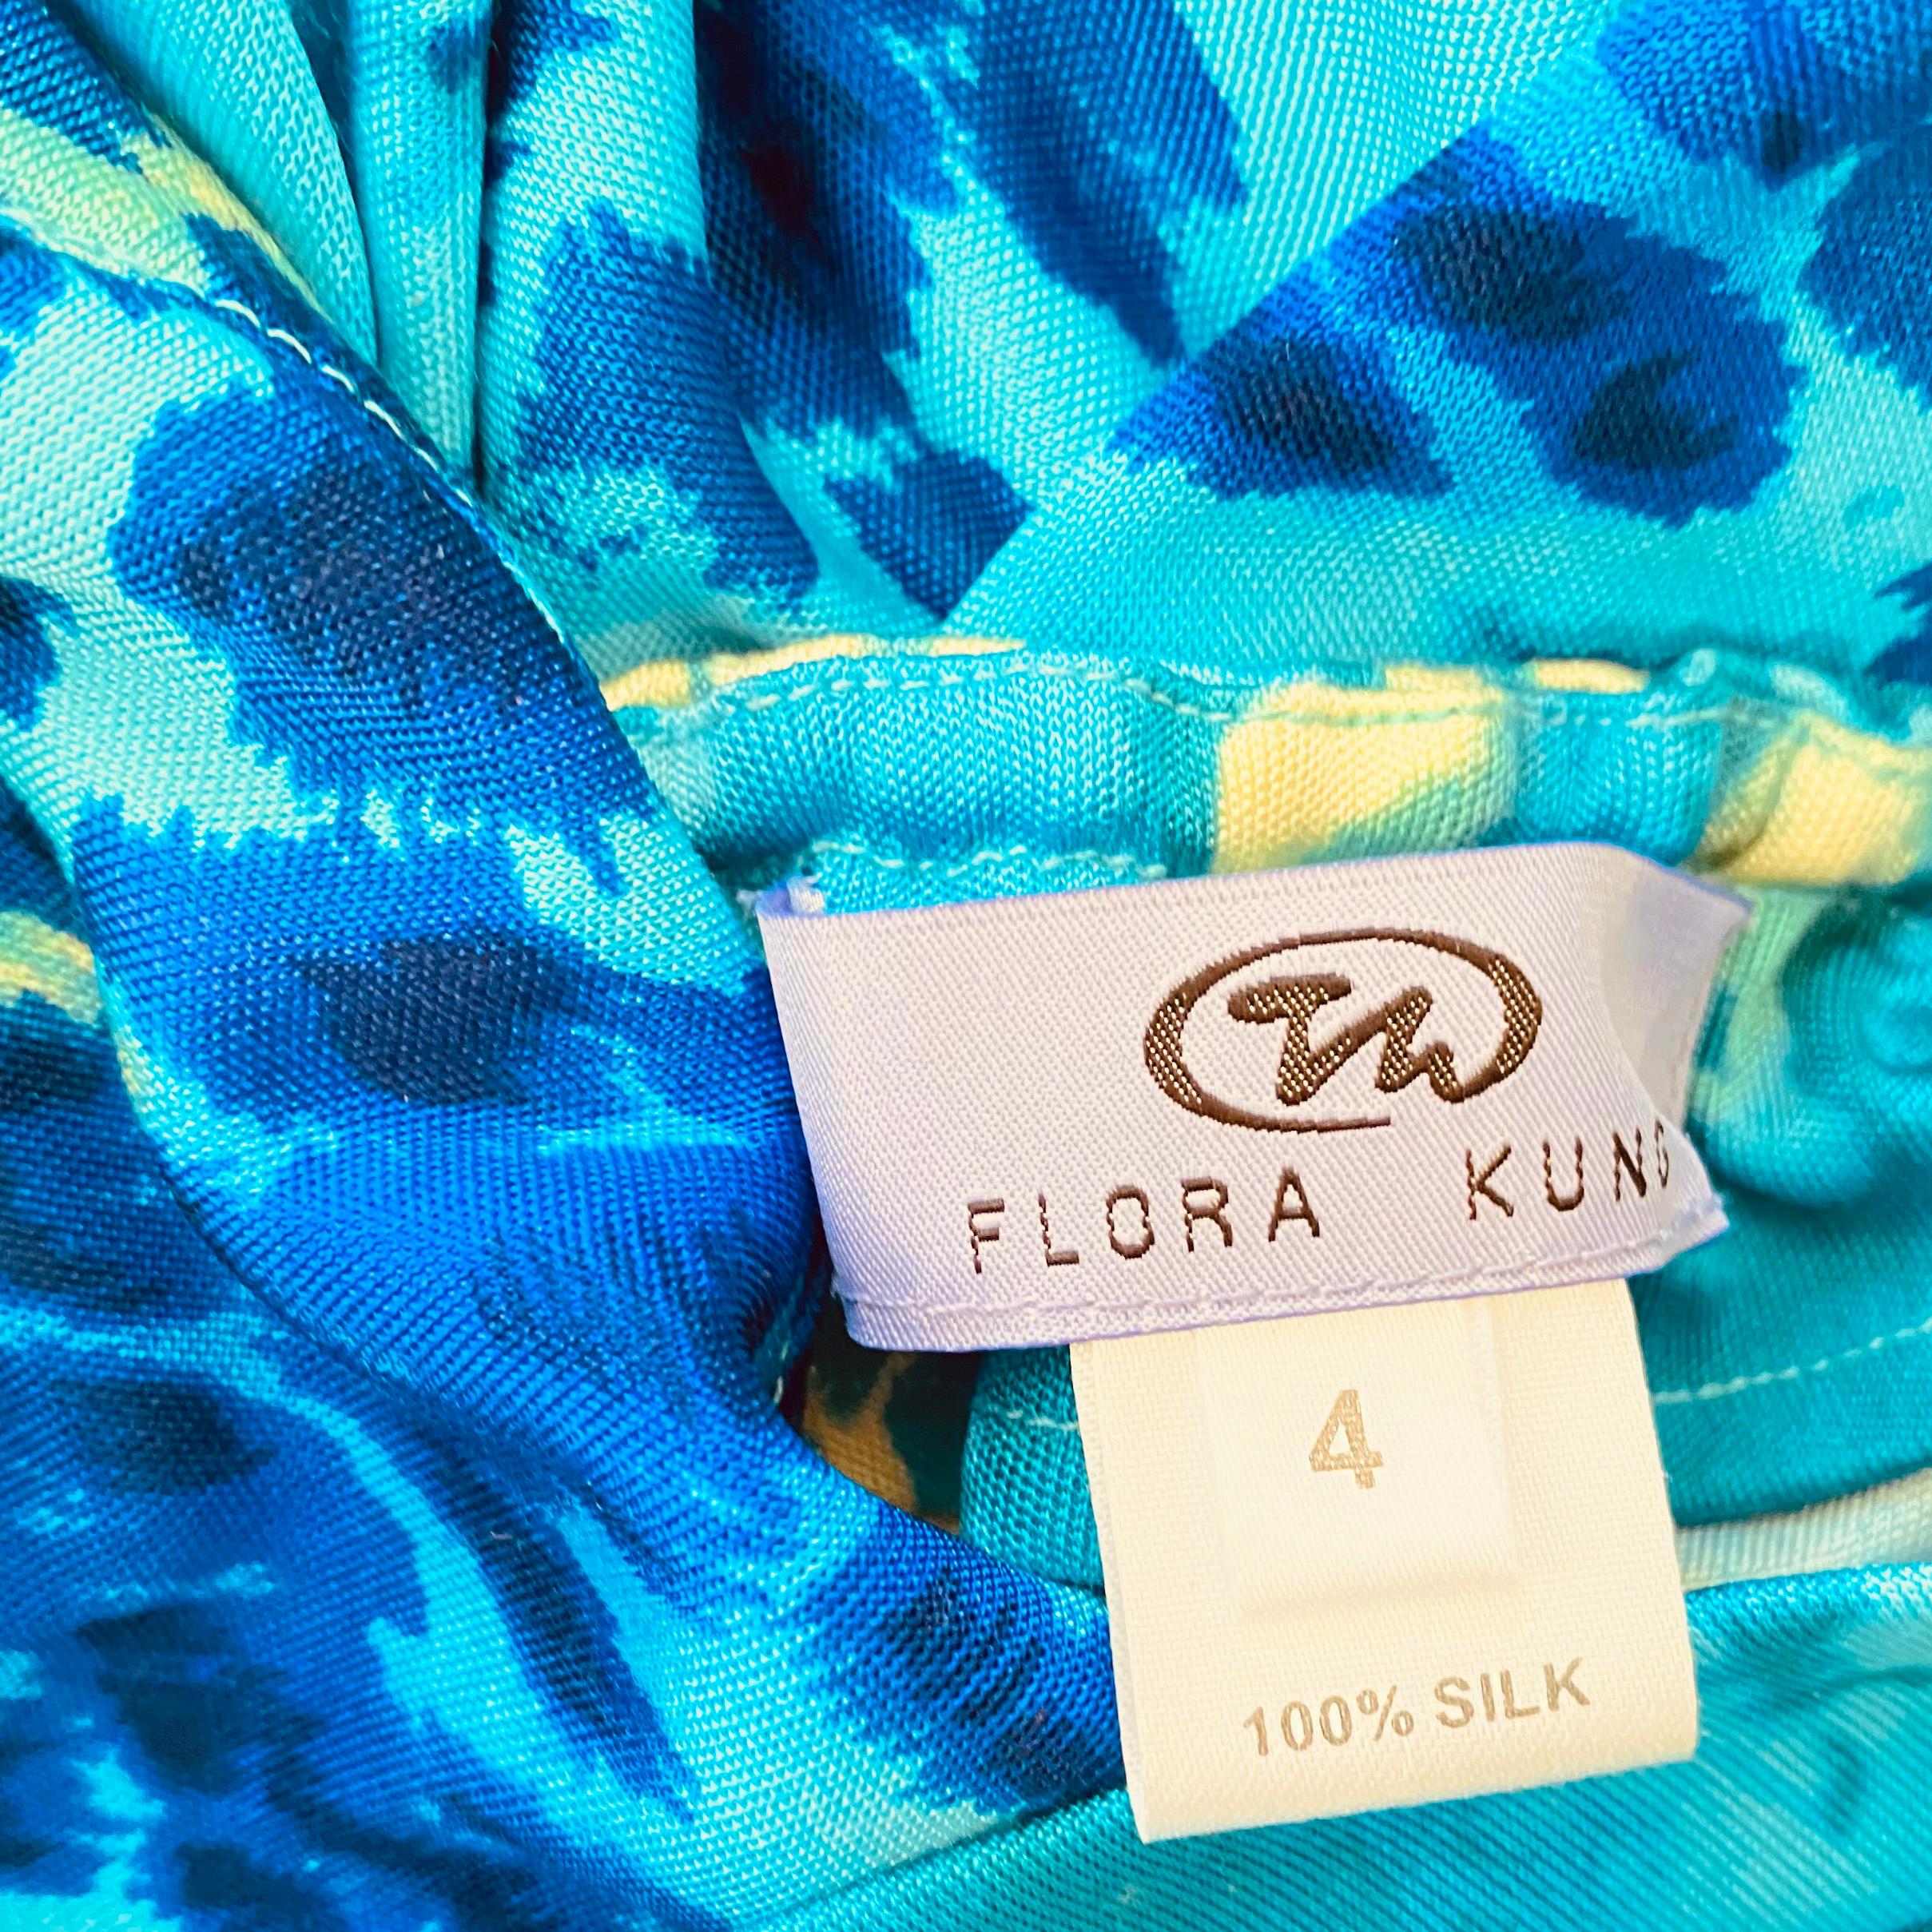 Silk Jersey Blue Spot print Halter Dress Flora Kung NWT 1